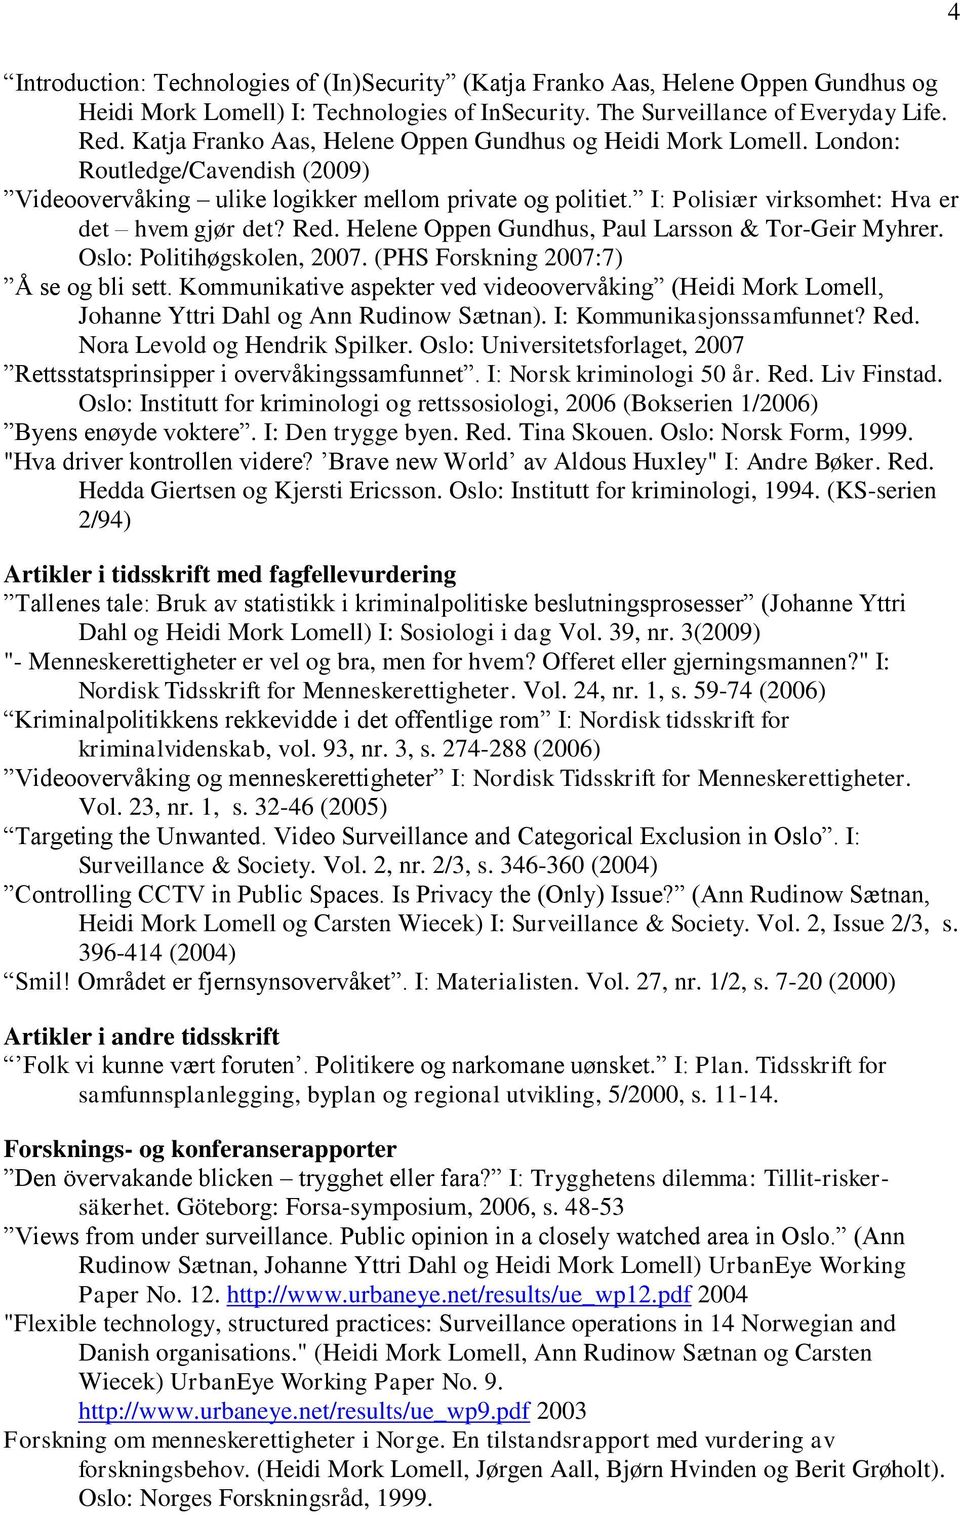 I: Polisiær virksomhet: Hva er det hvem gjør det? Red. Helene Oppen Gundhus, Paul Larsson & Tor-Geir Myhrer. Oslo: Politihøgskolen, 2007. (PHS Forskning 2007:7) Å se og bli sett.